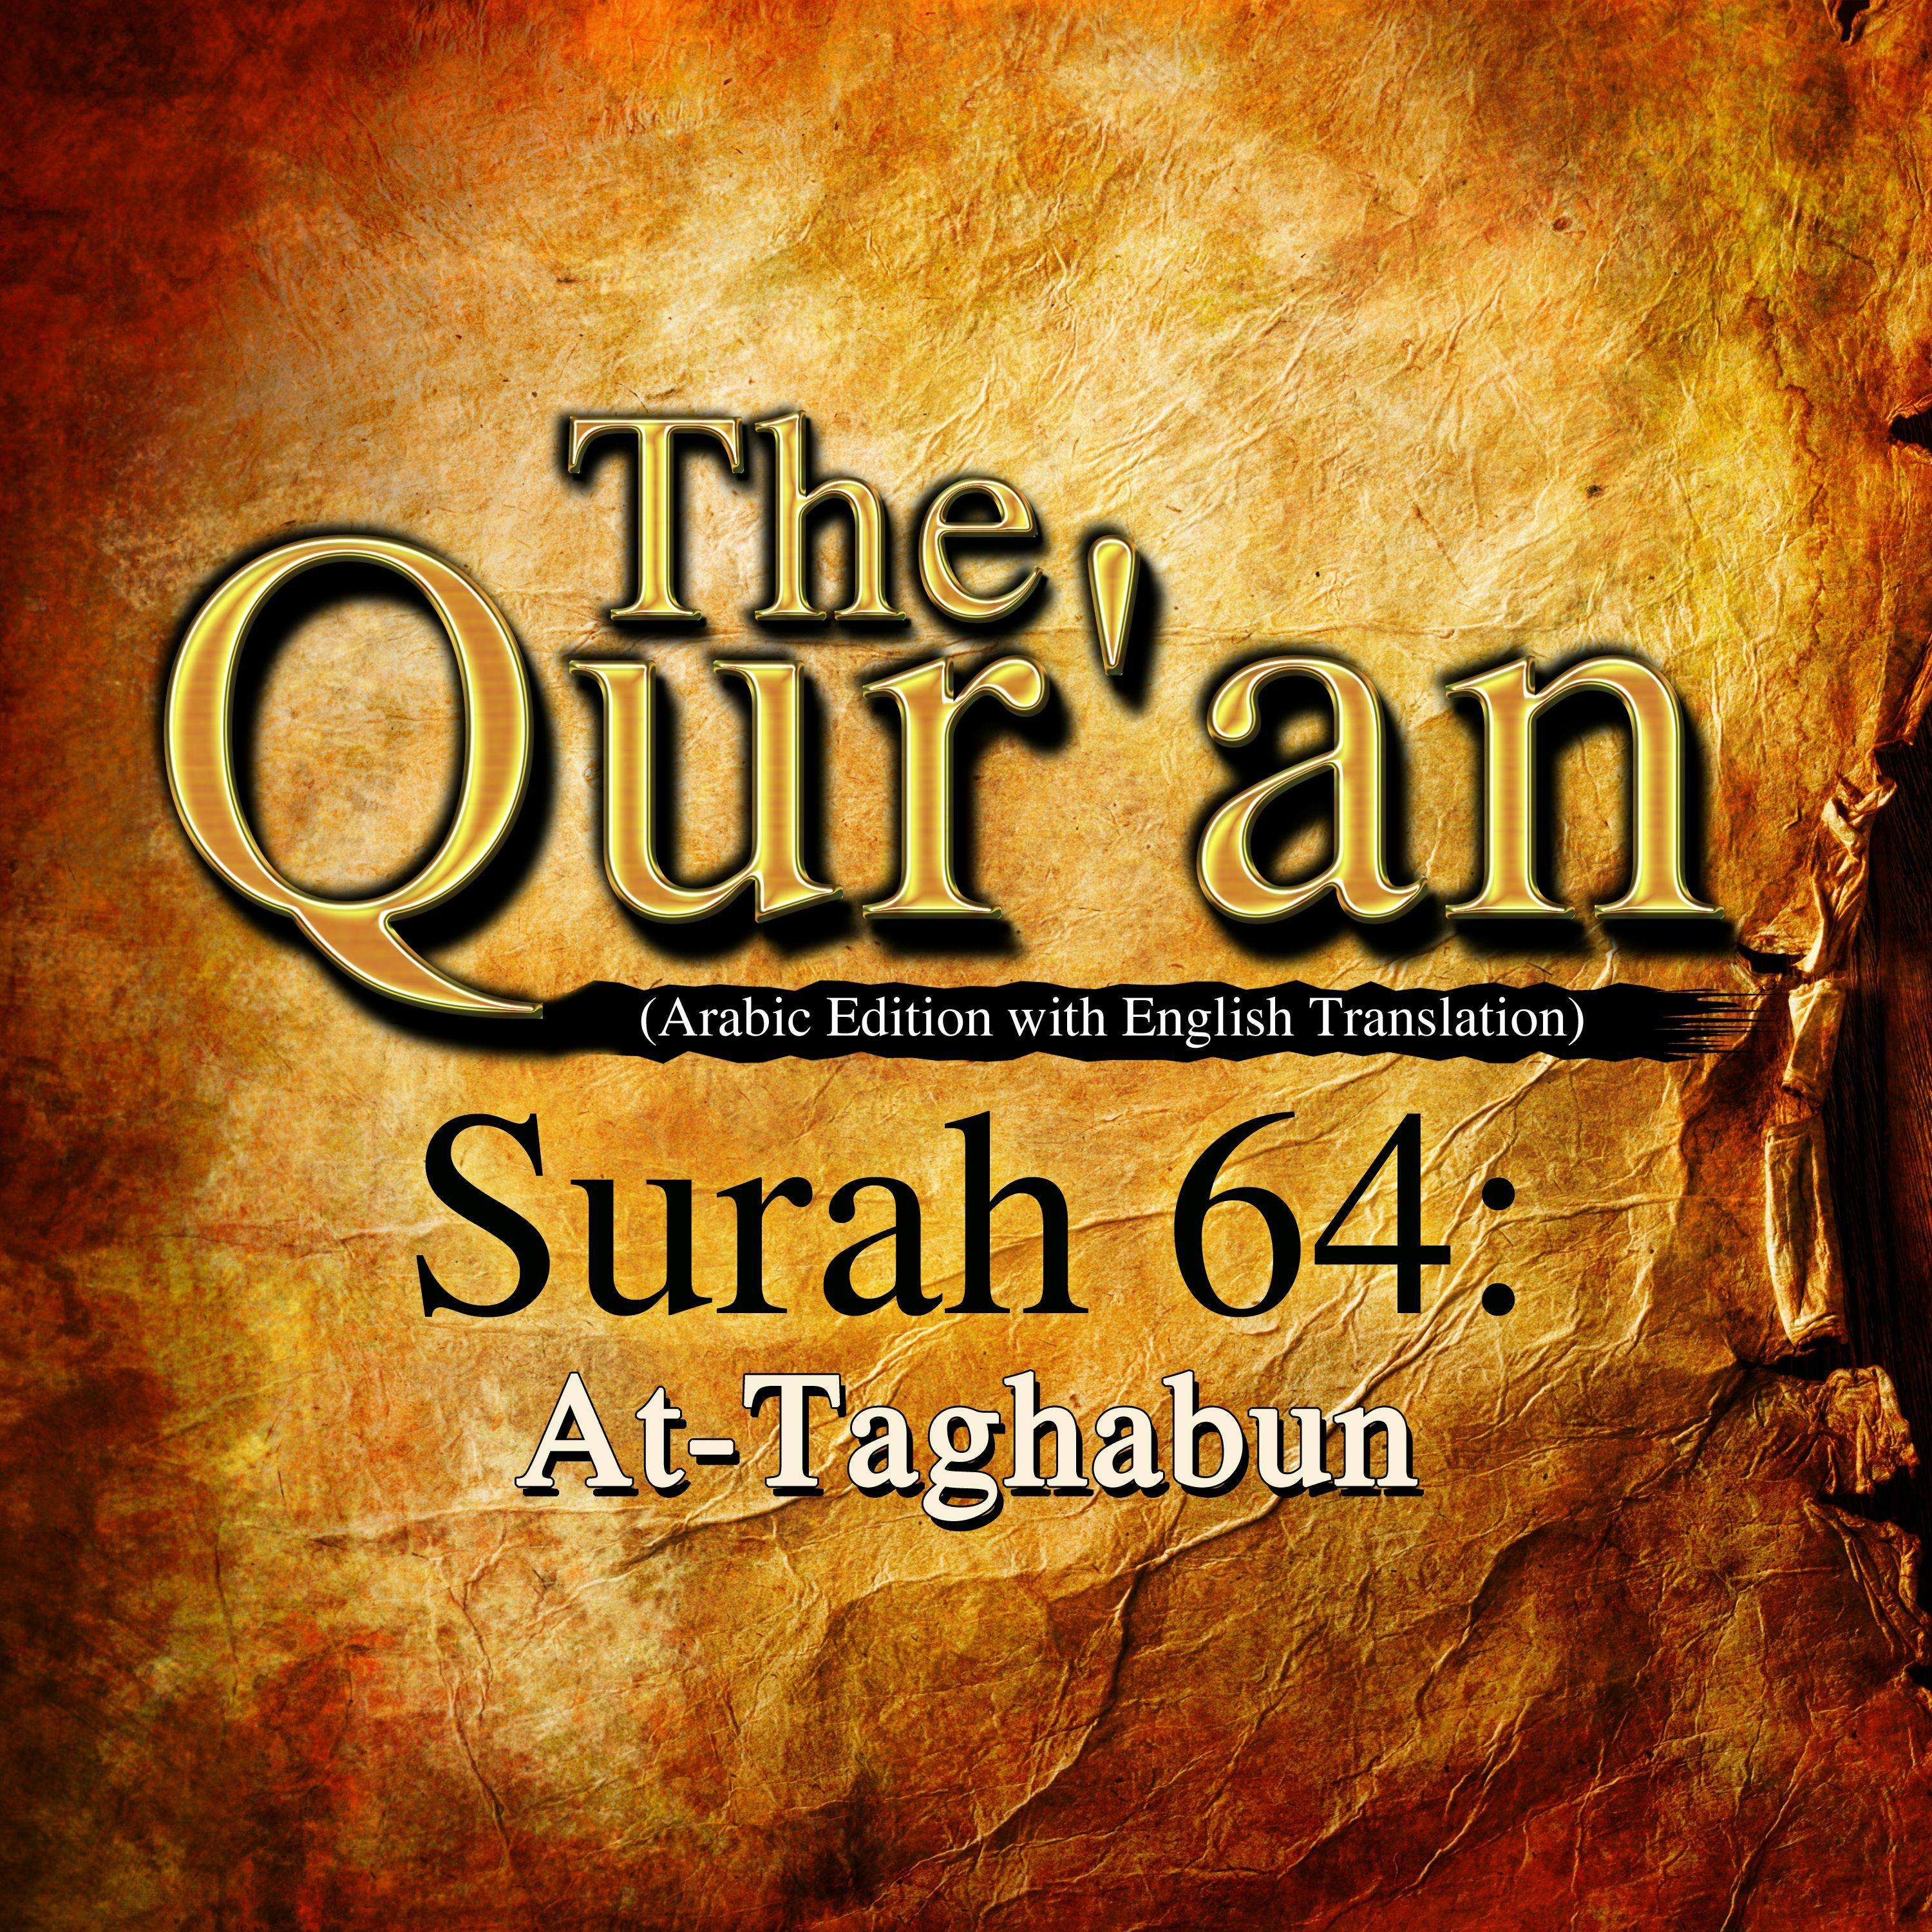 The Qur'an: Surah 64: At-Taghabun - One Media iP LTD